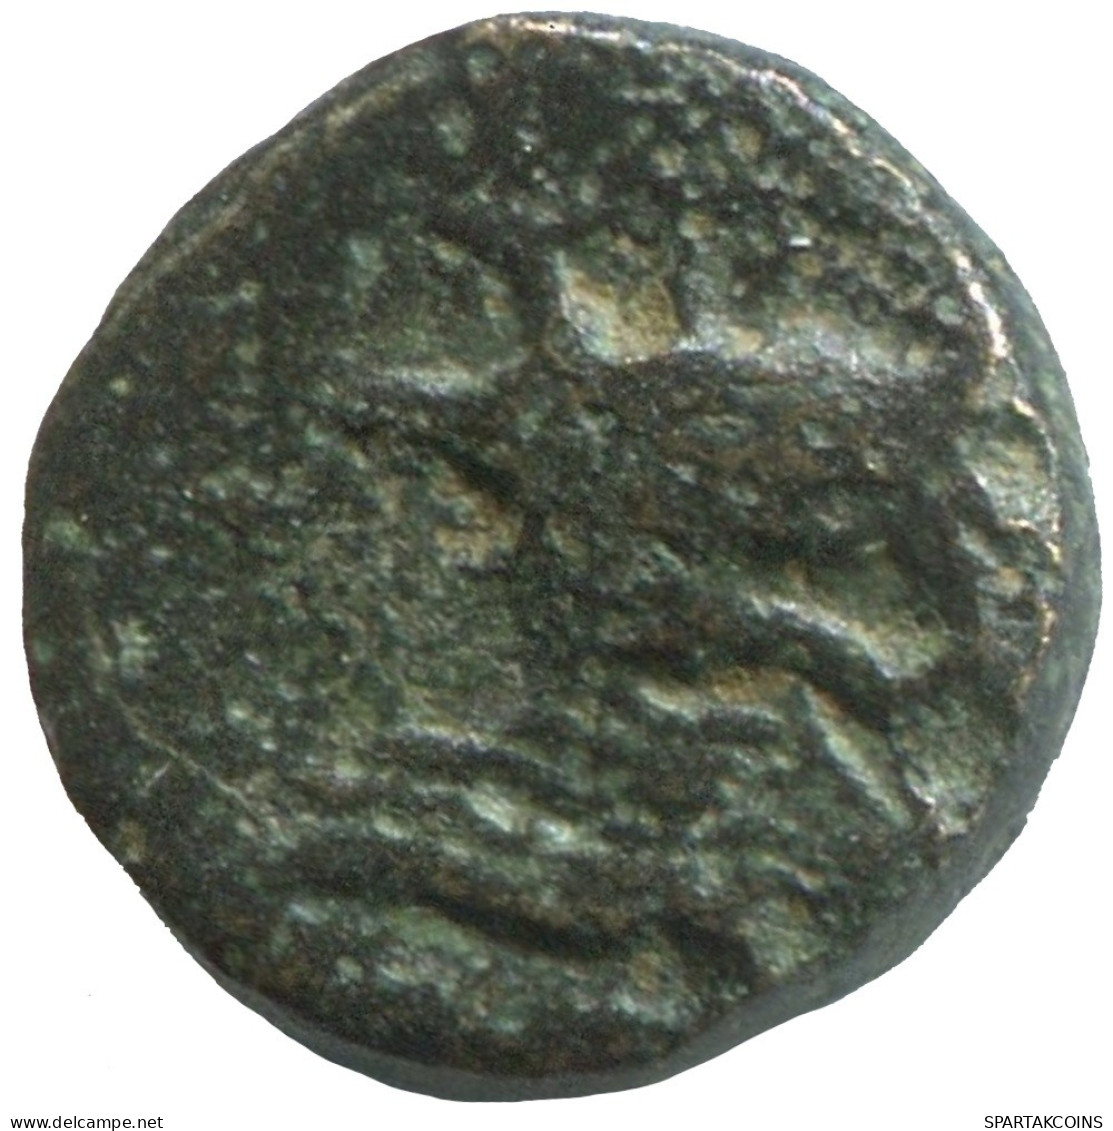 Ancient Antike Authentische Original GRIECHISCHE Münze 1.3g/10mm #SAV1319.11.D.A - Griechische Münzen